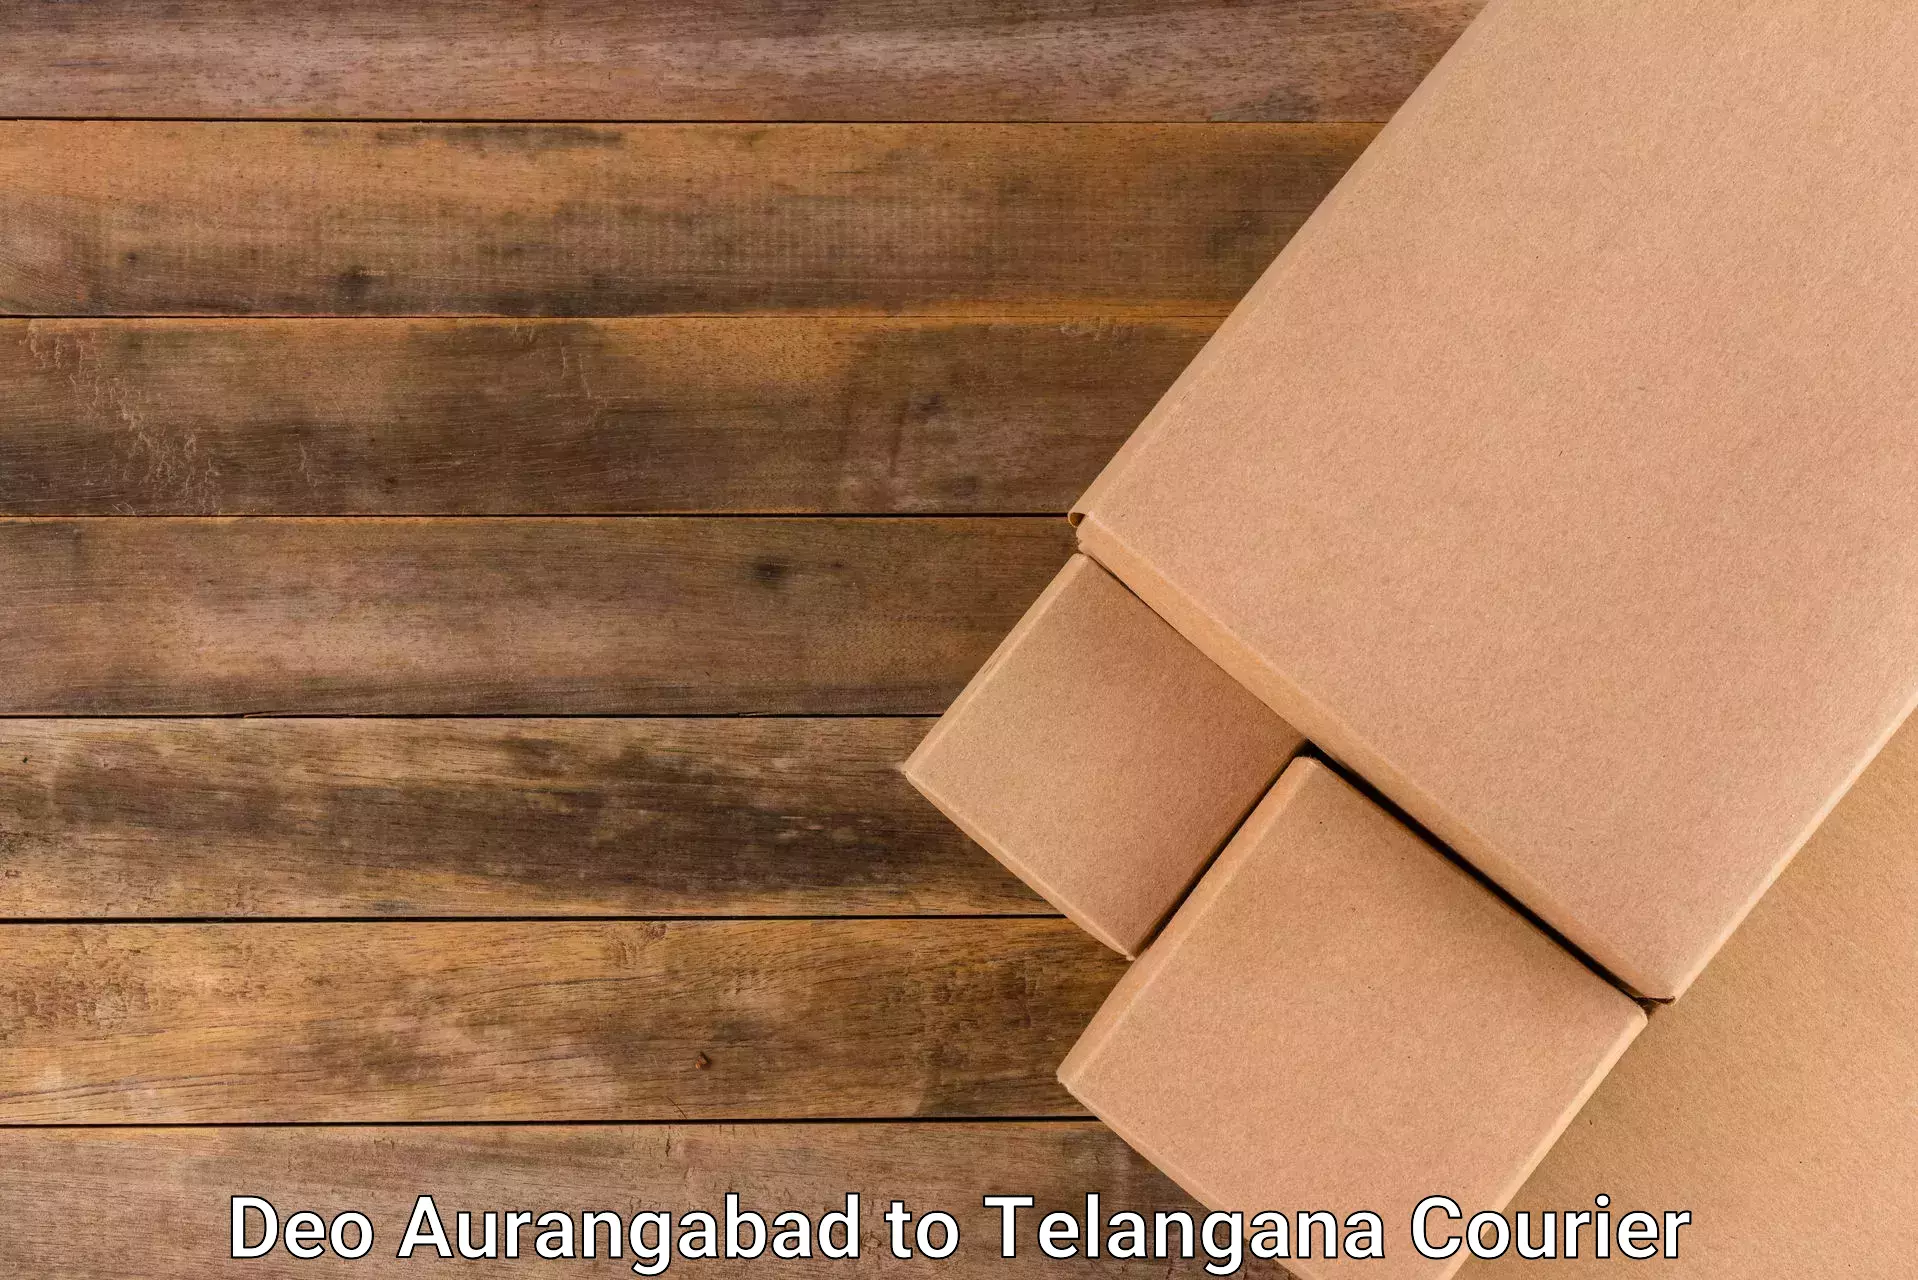 Smart parcel delivery Deo Aurangabad to Madnoor